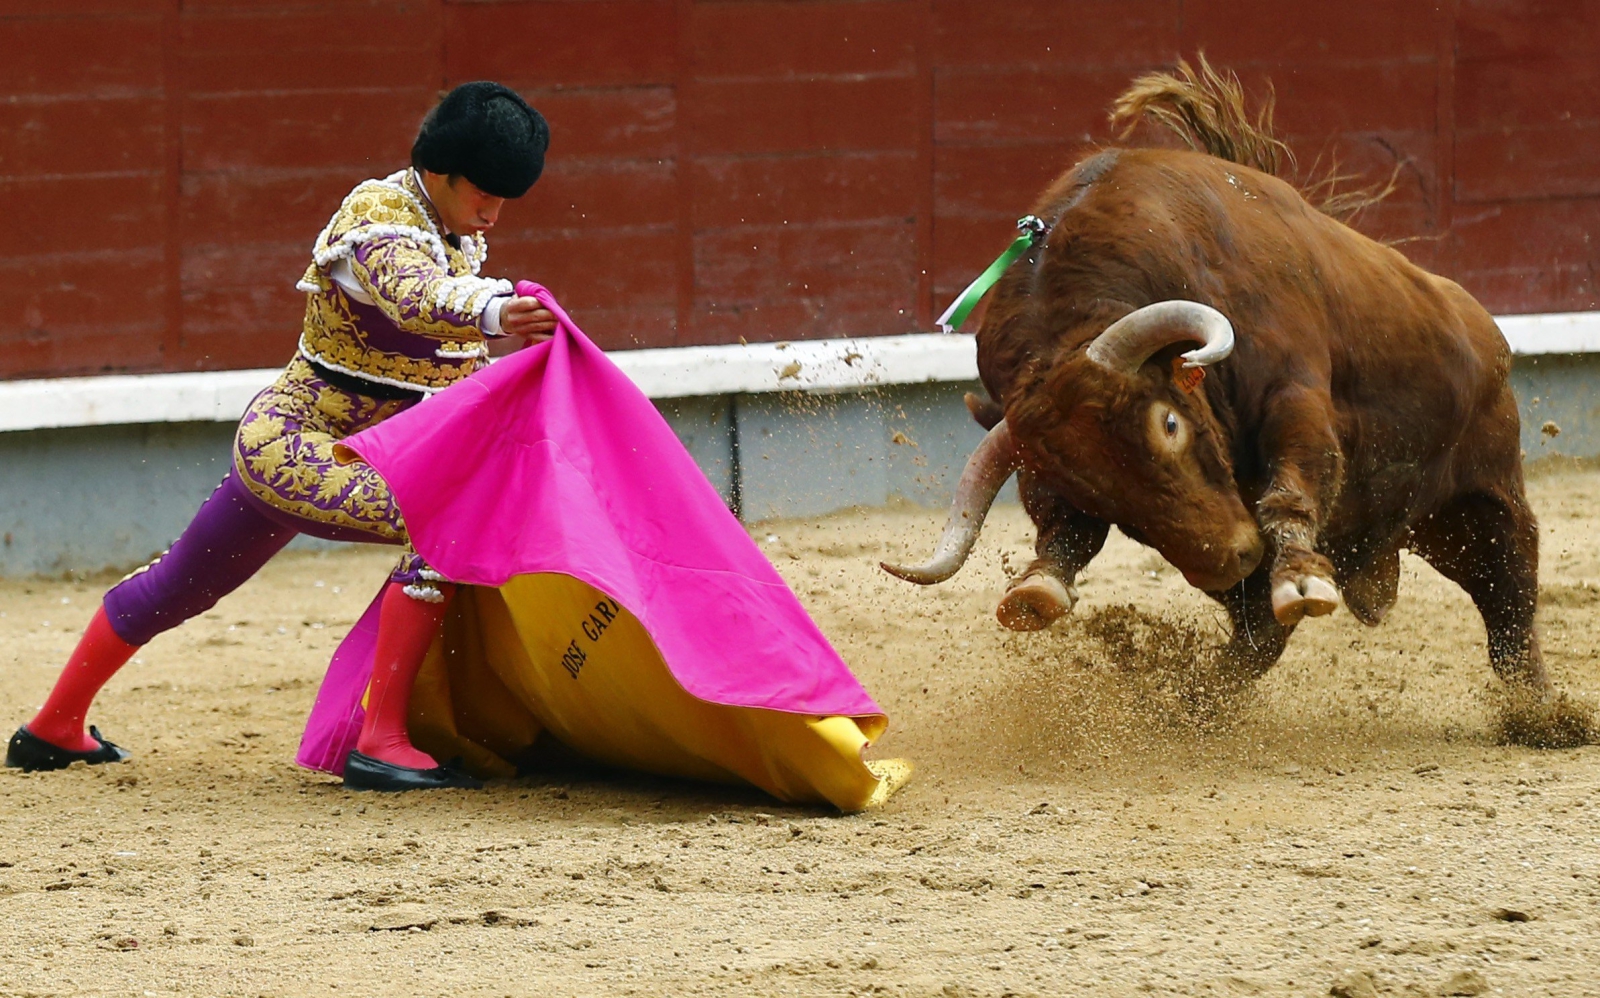 Hiszpański torreador Jose Garrido w trakcie swojej walki z bykiem, Madryt, Hiszpania.